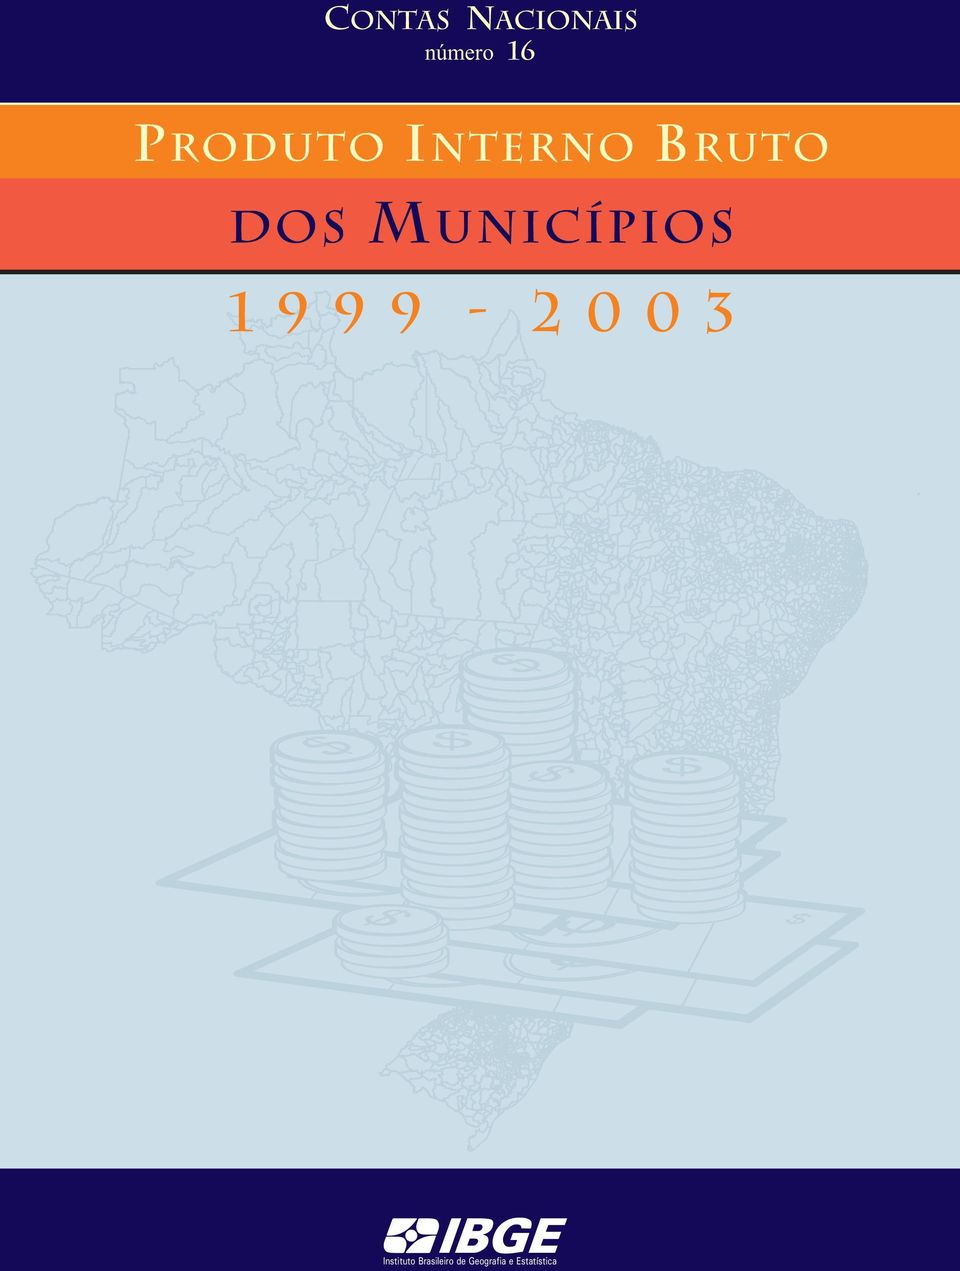 unicípios 1999-2003 IBGE